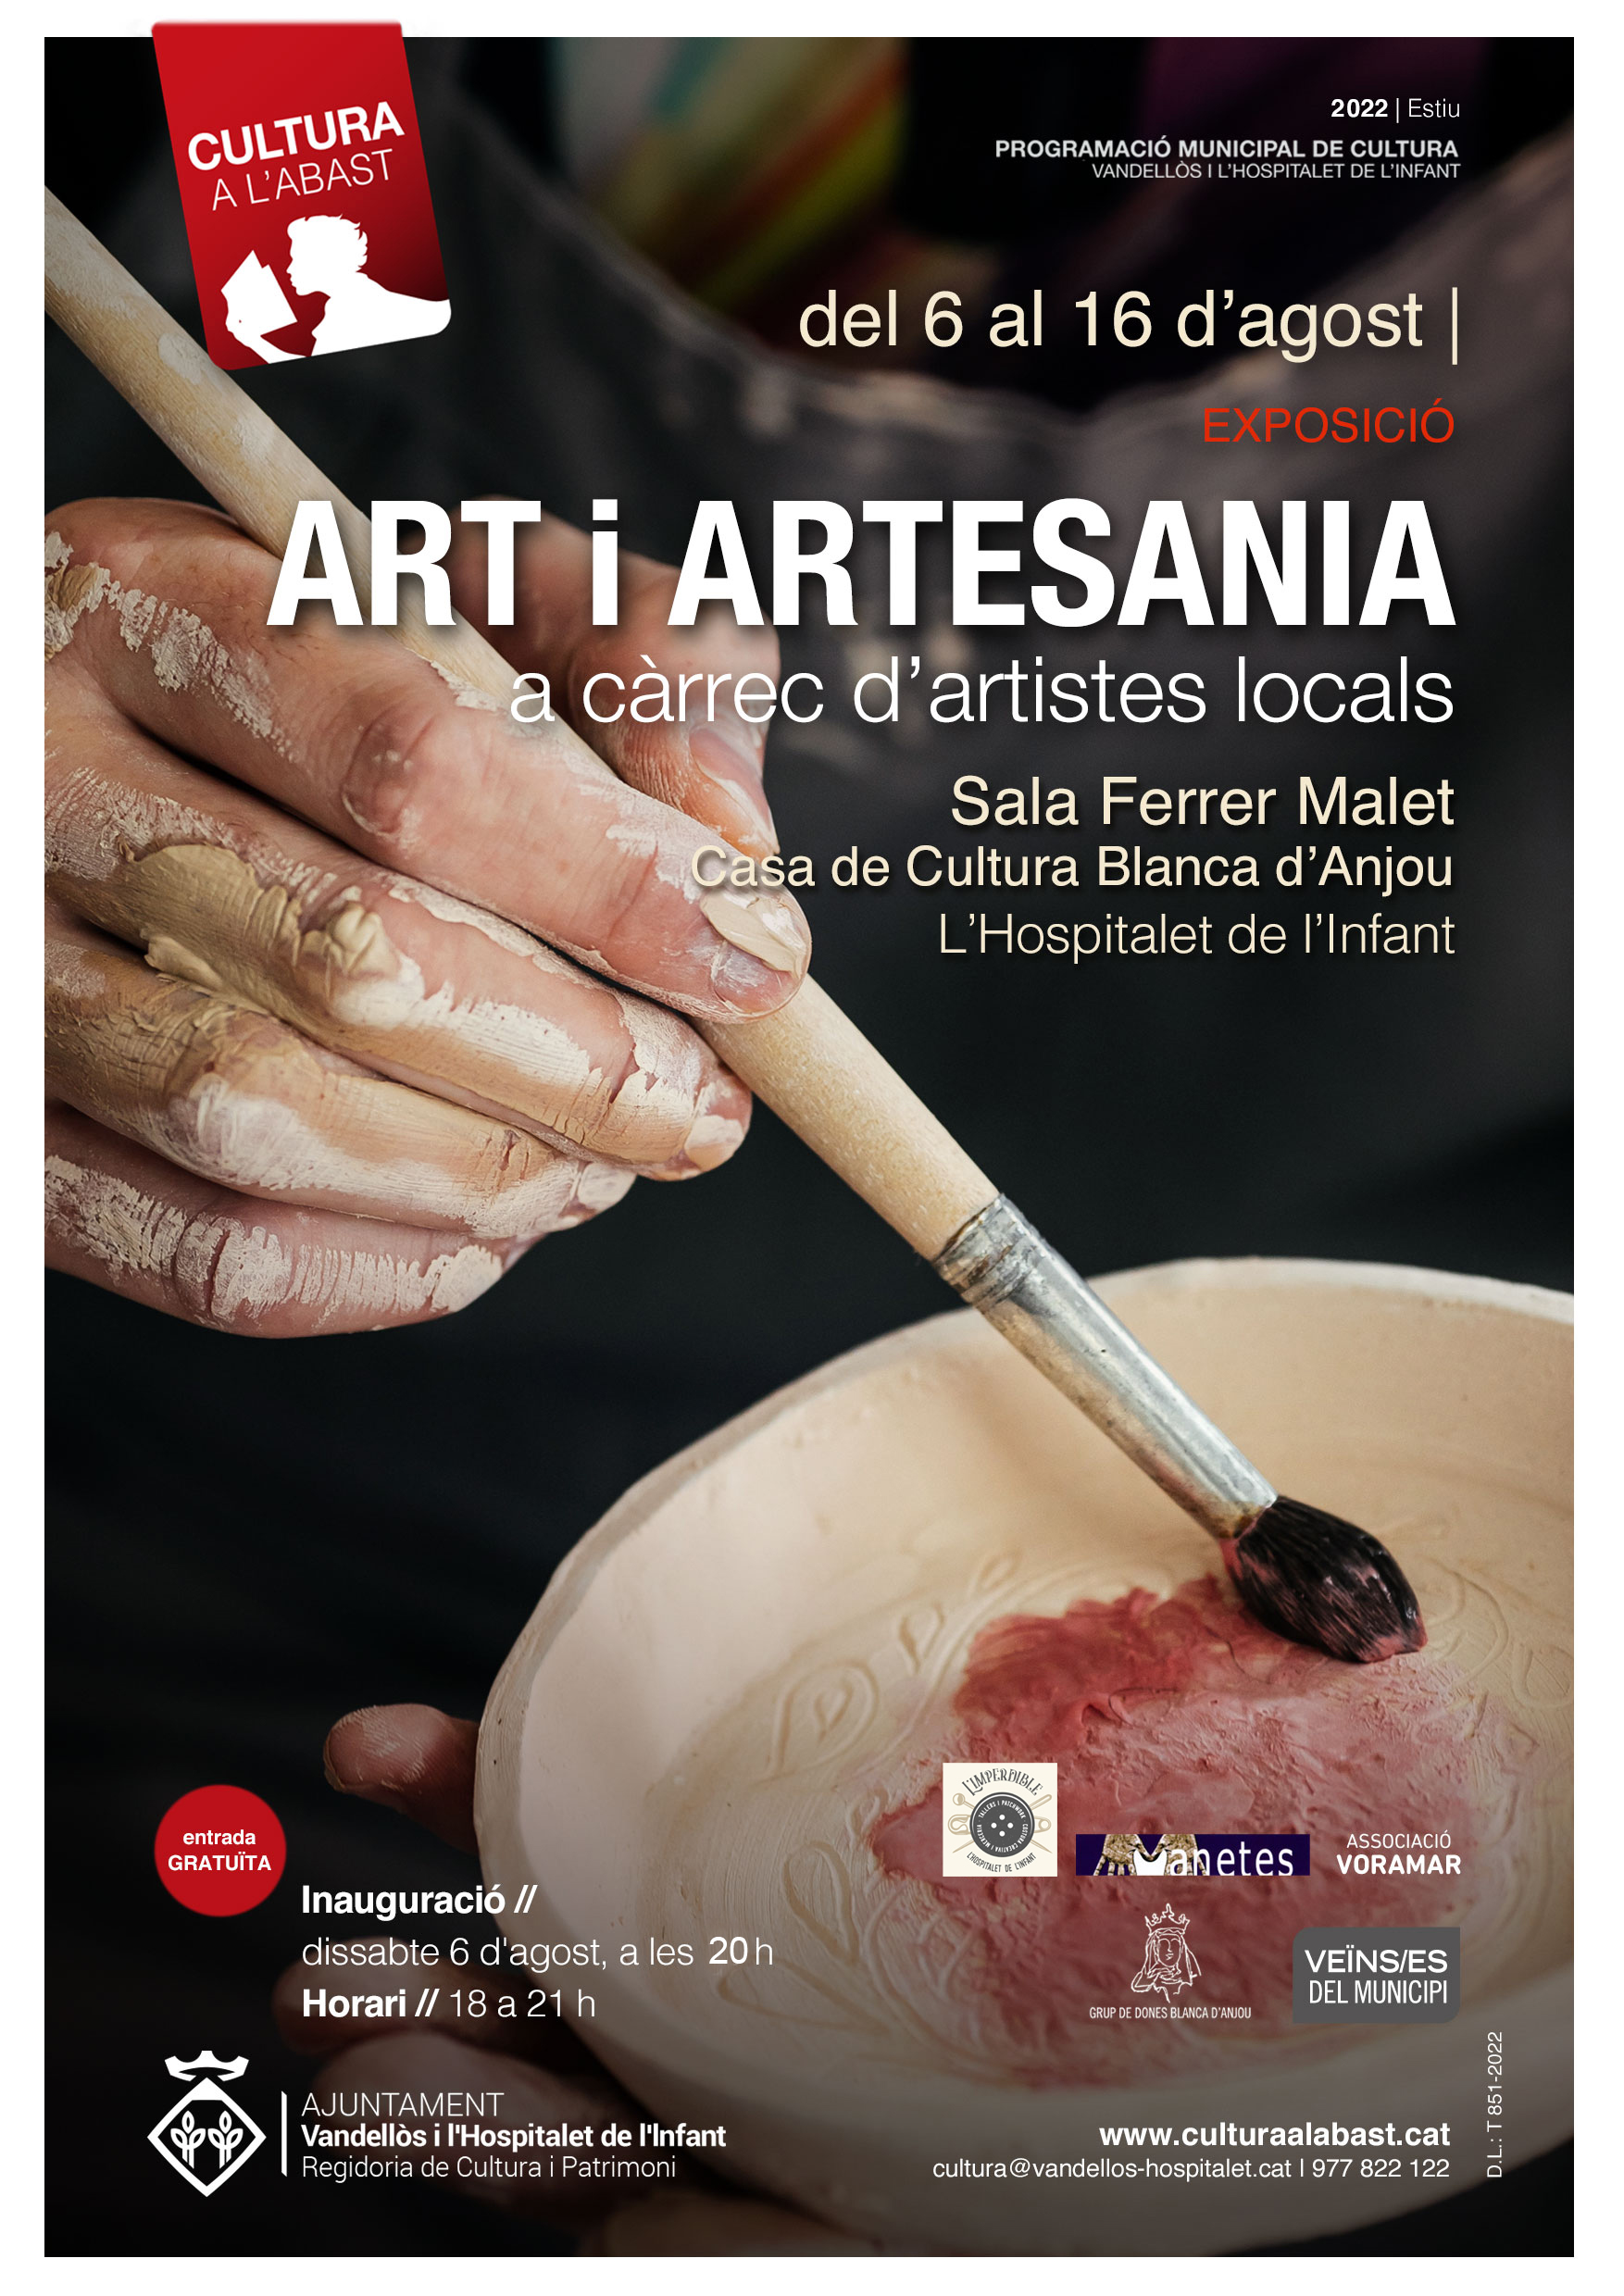 Exposició: Art i Artesania / del 6 al 16 d'agost a l'Hospitalet de l'Infant